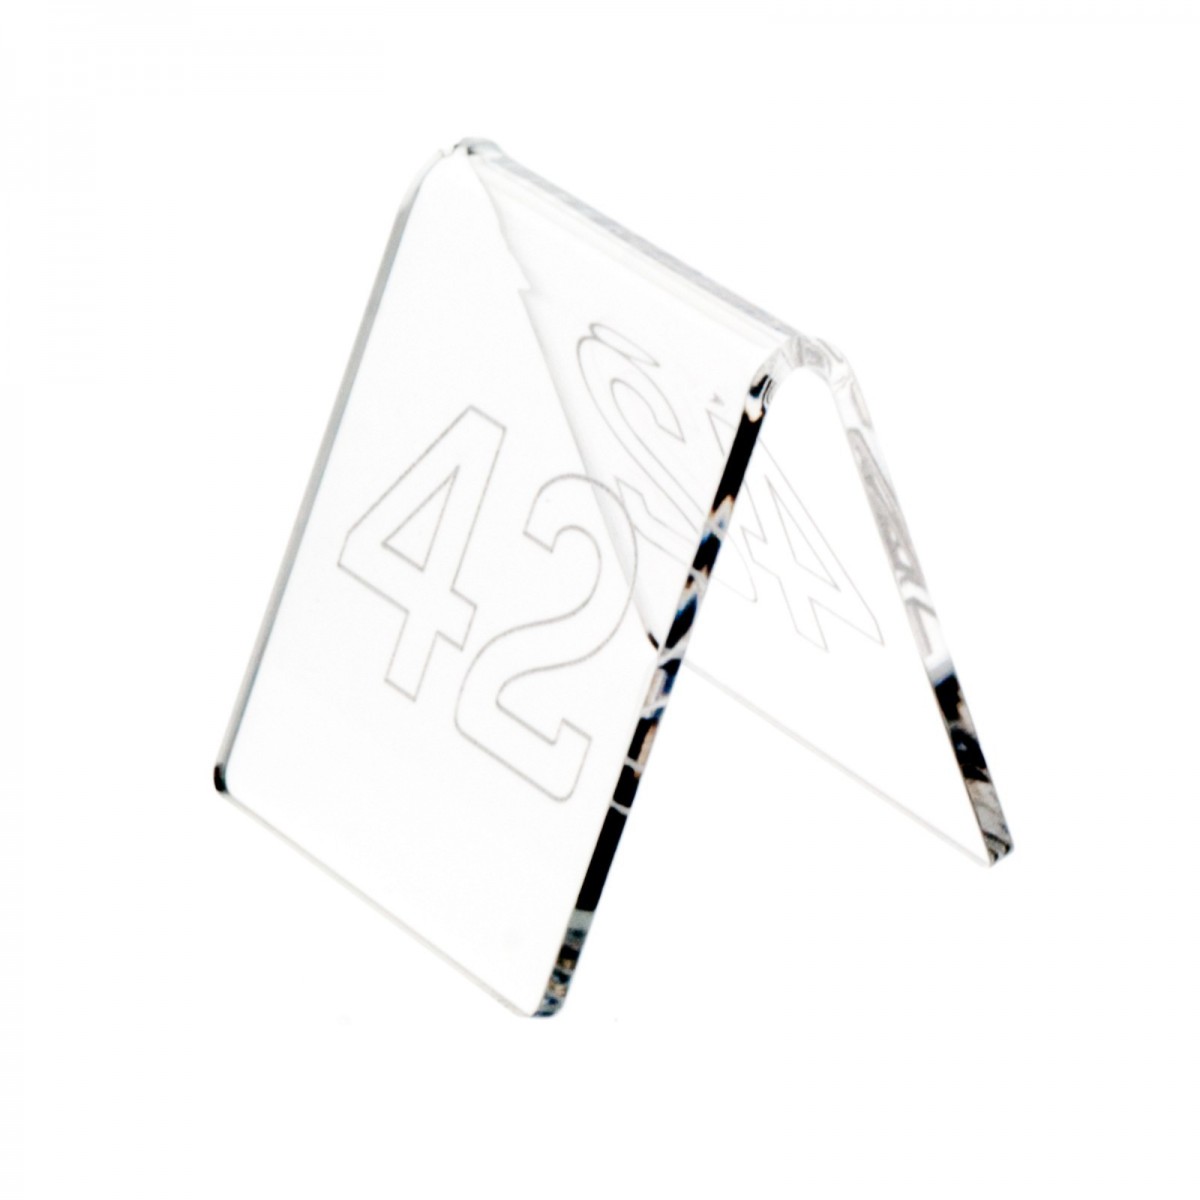 E-041 NT-B - Segnaposti in plexiglass trasparente - Misure: 6x7x H6.5 cm - incisione contorno